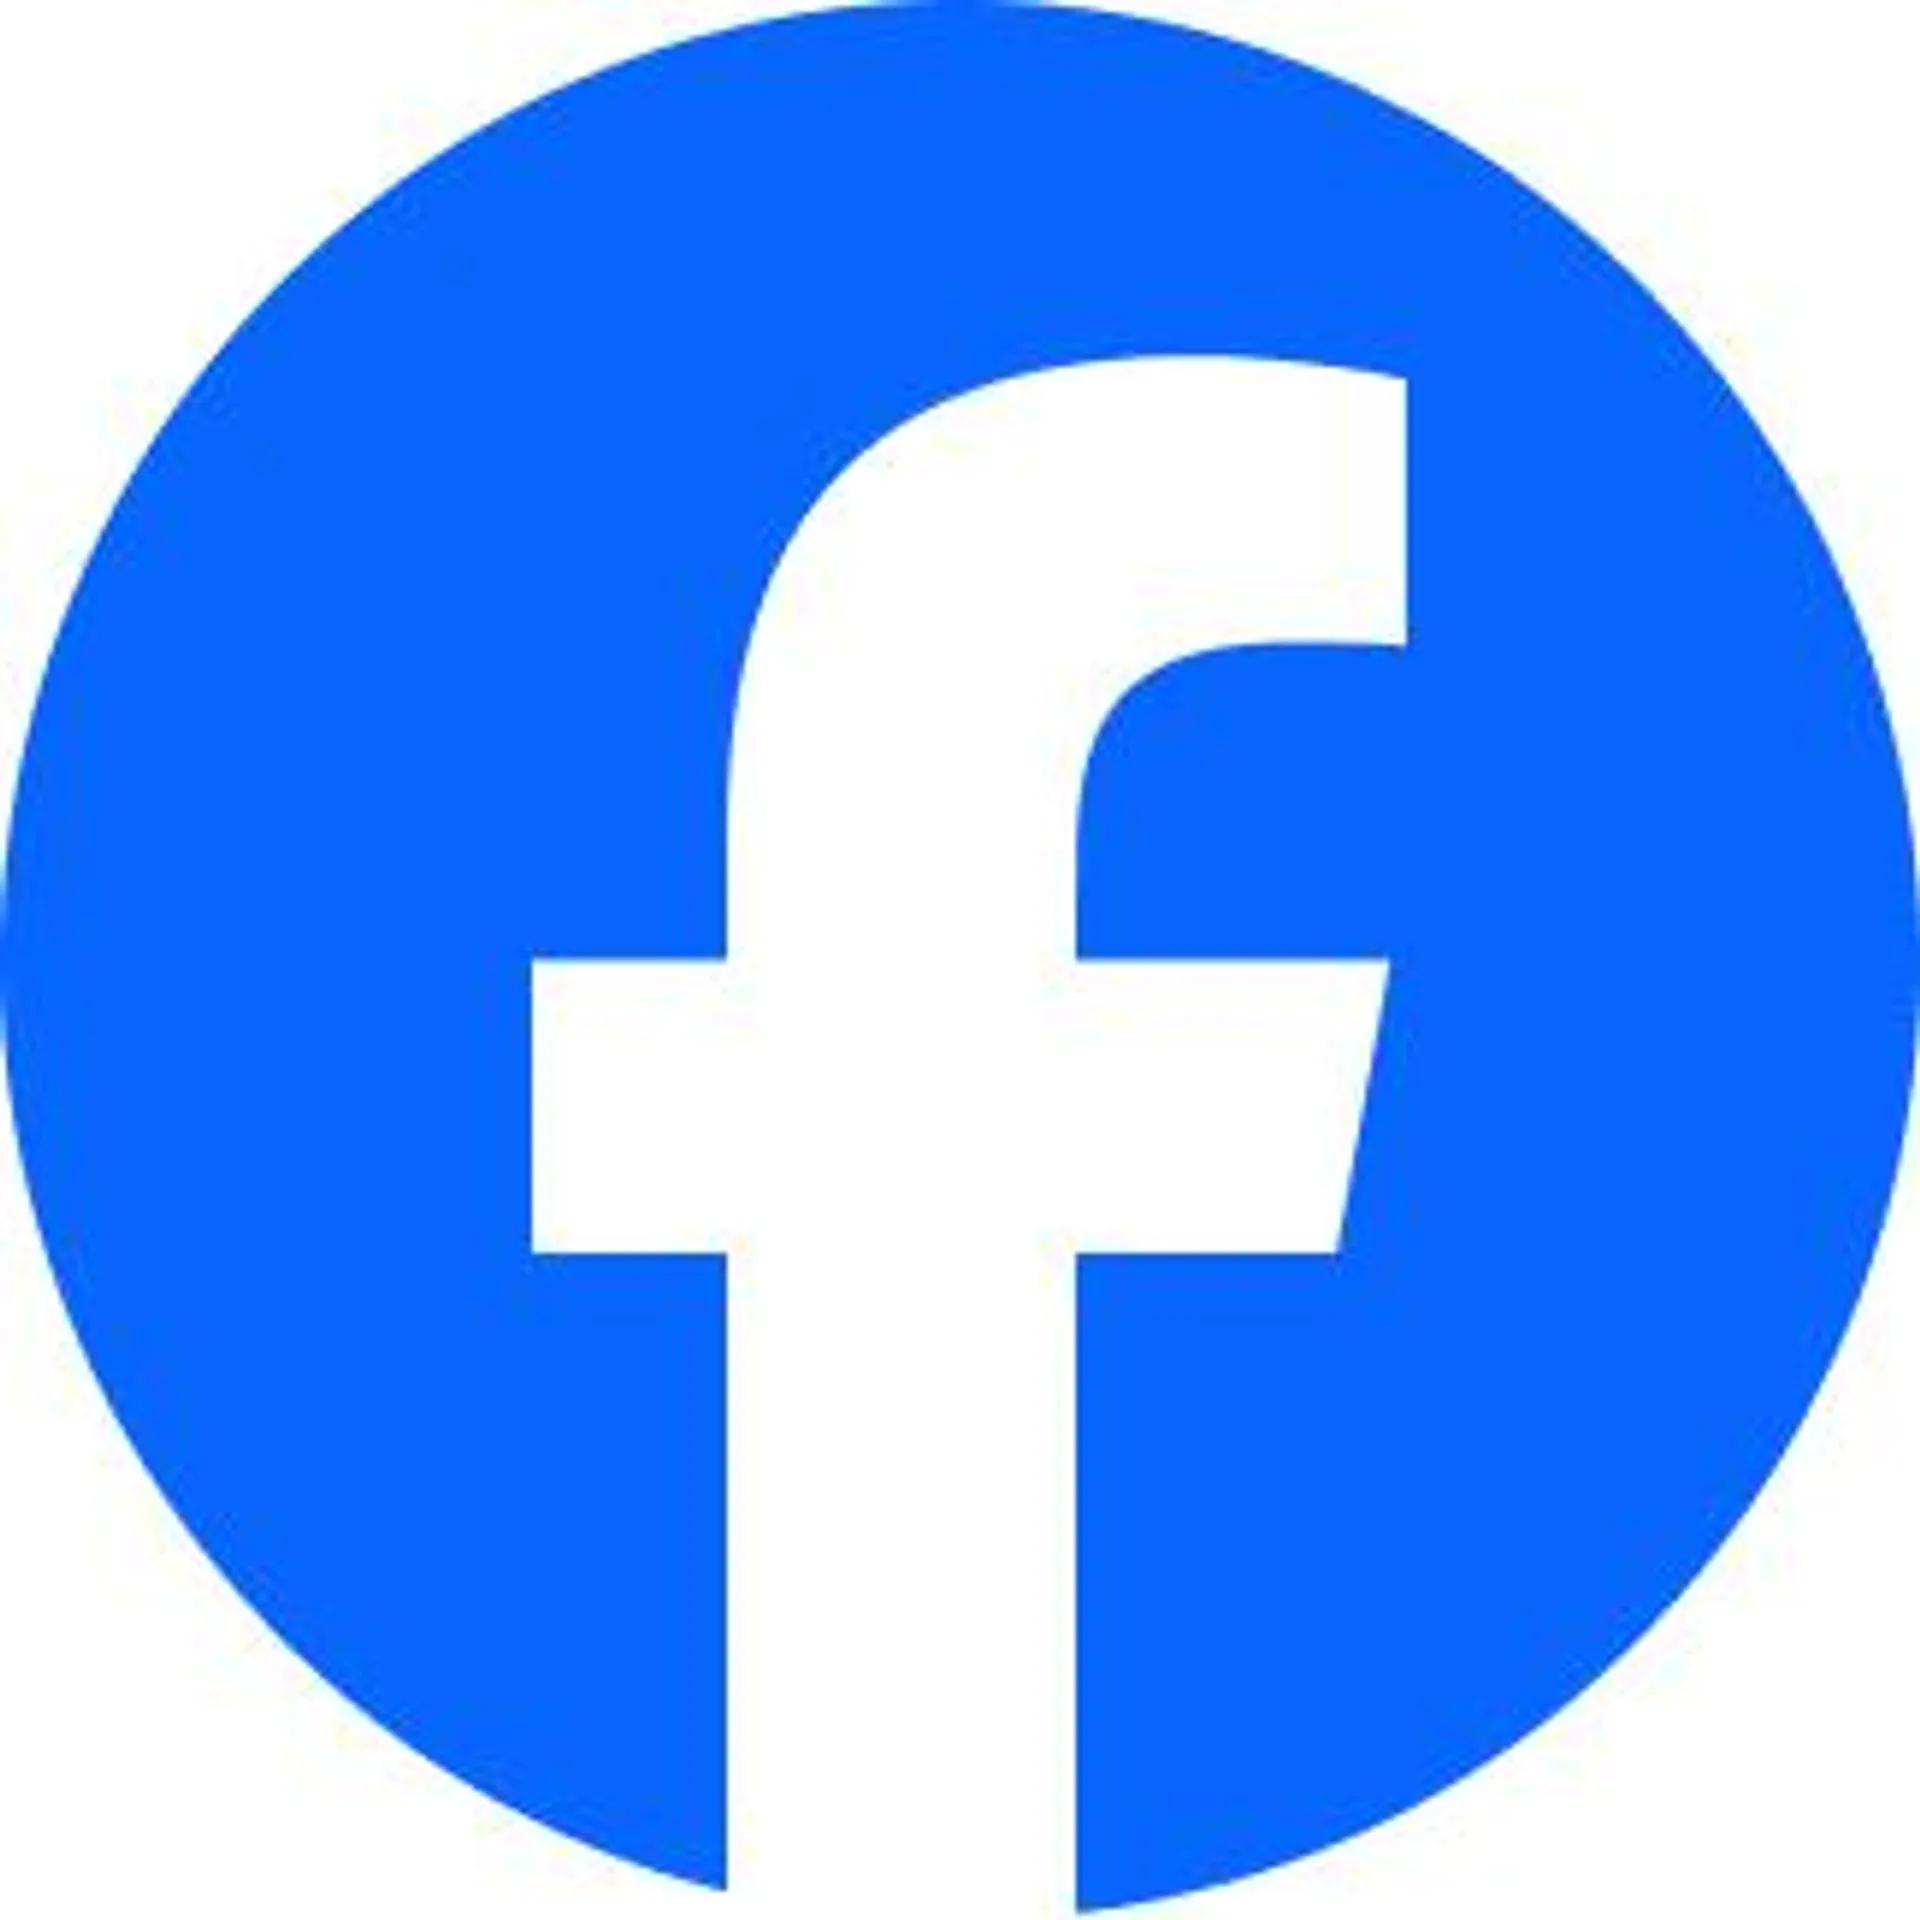 Facebook membantu Anda terhubung dan berbagi dengan orang-orang dalam kehidupan Anda.